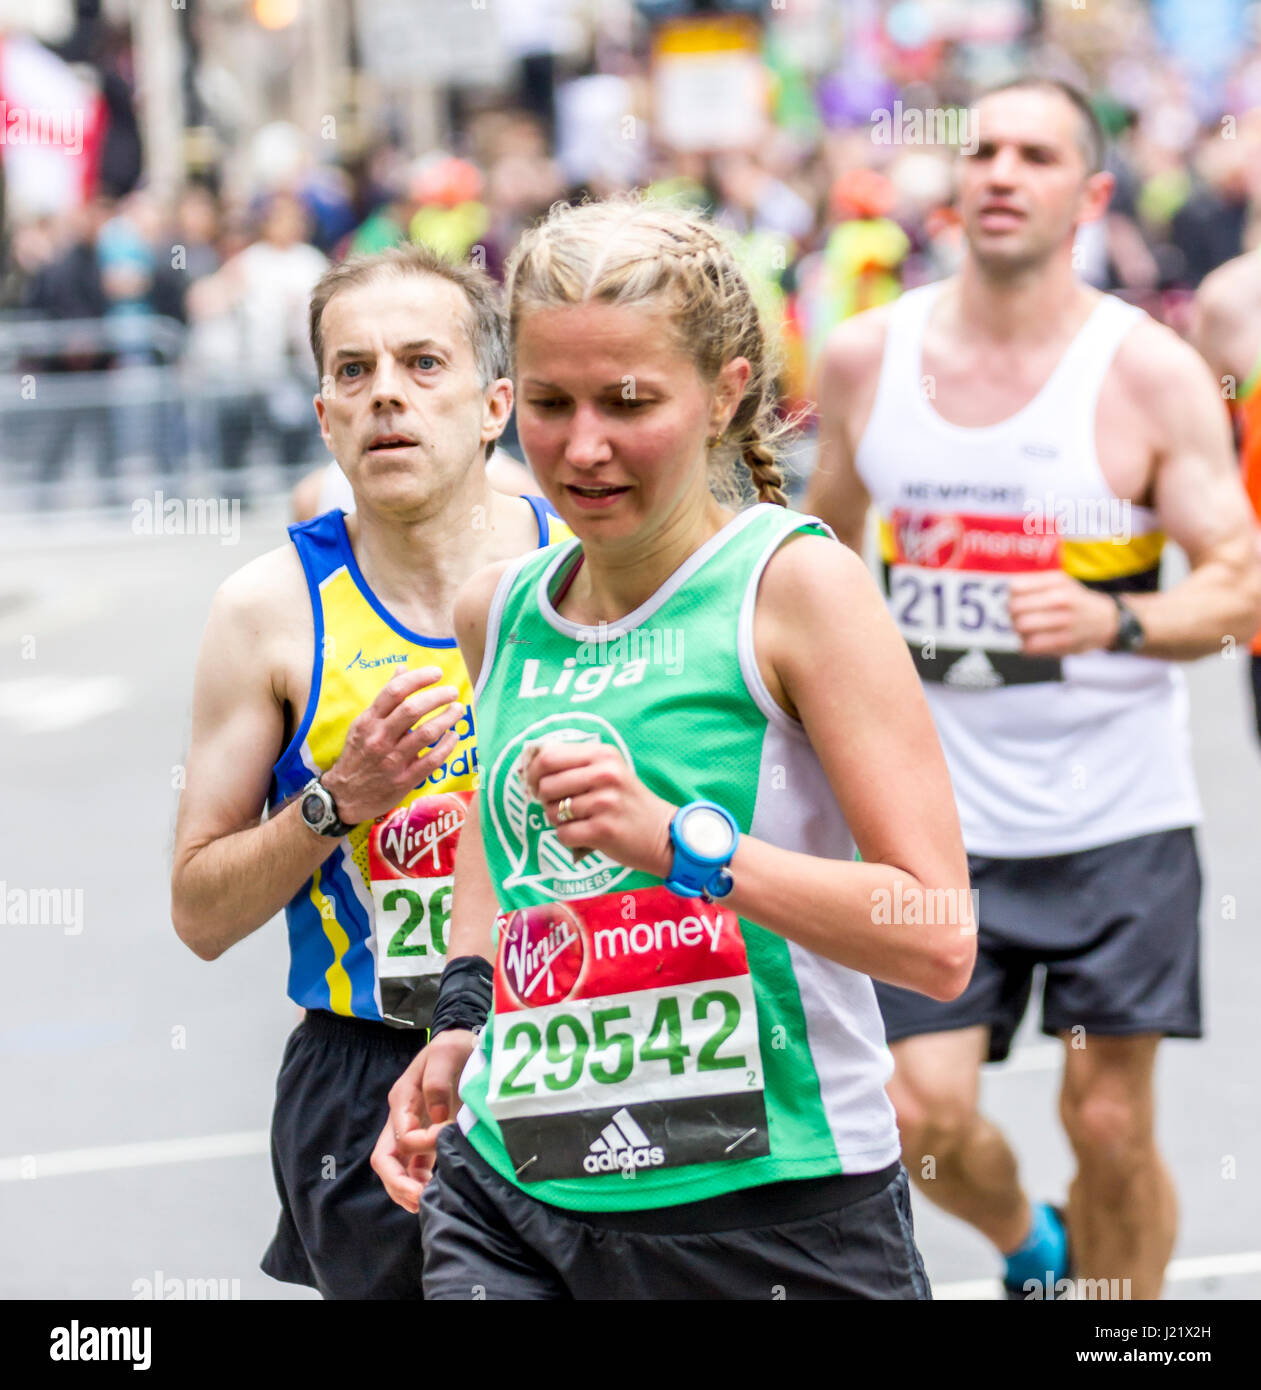 St James park, london, Regno Unito. 23 apr, 2017. migliaia di prendere parte alla trentasettesima maratona di Londra credito: Alan fraser/alamy live news Foto Stock